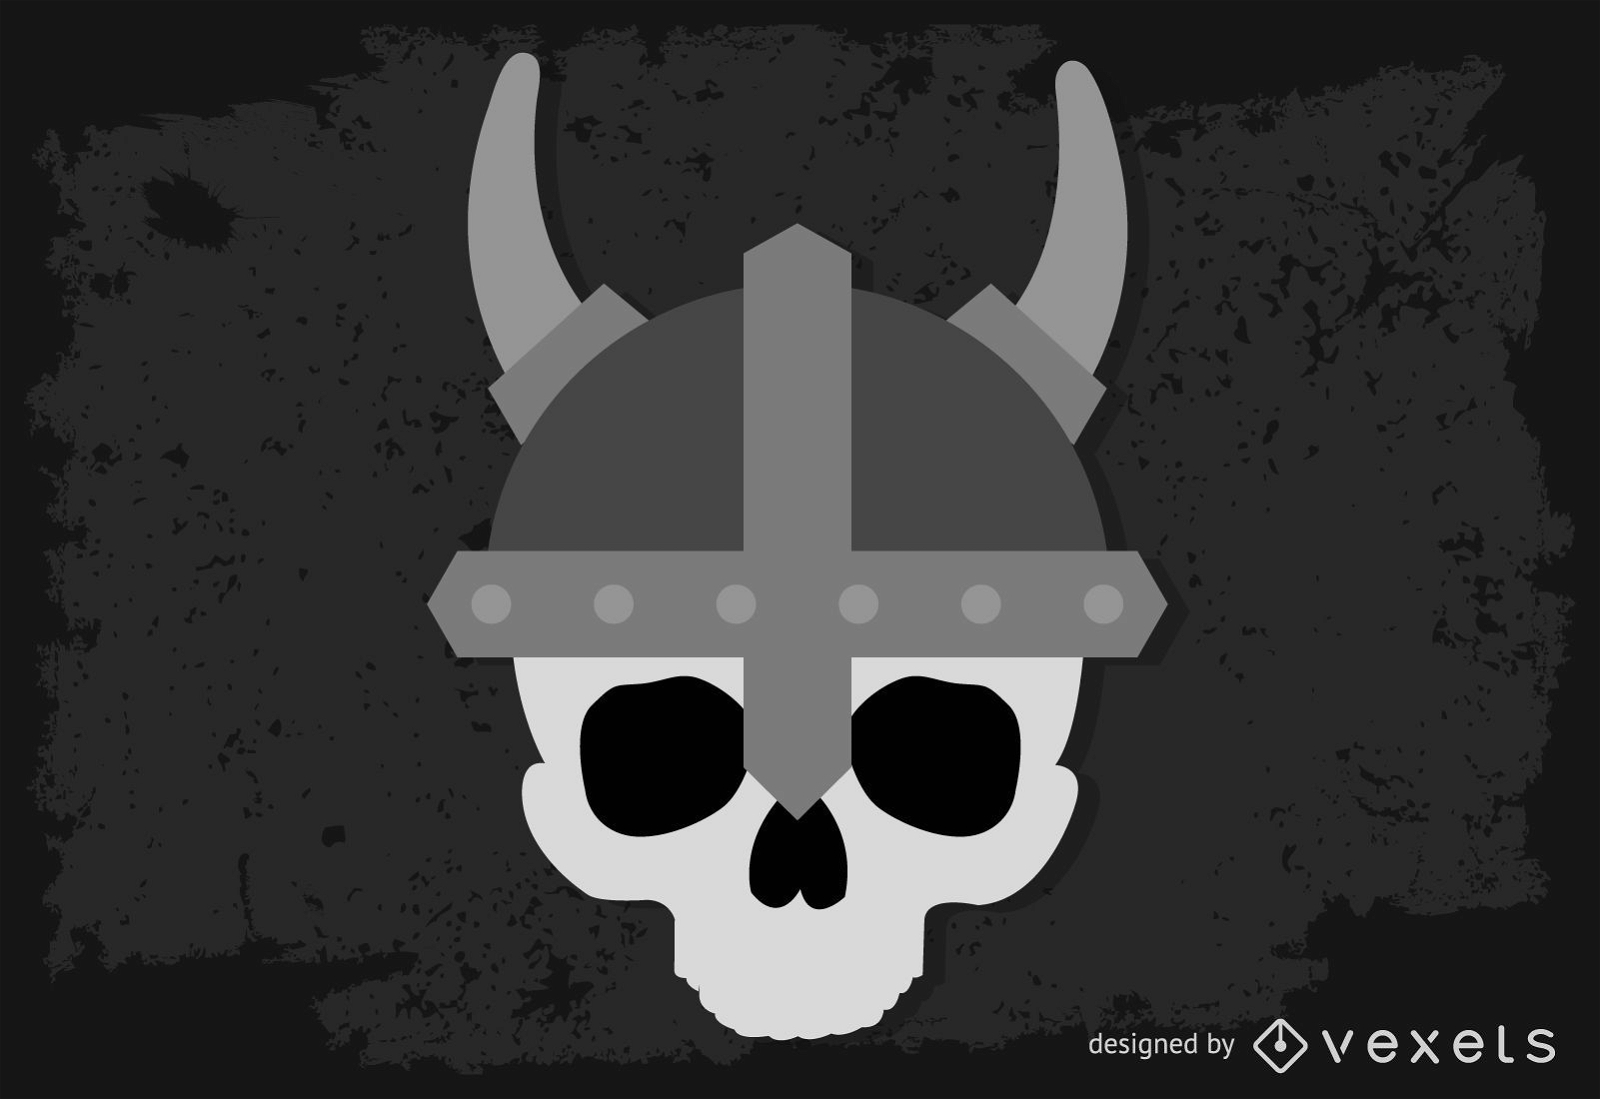 Viking Skull Vector